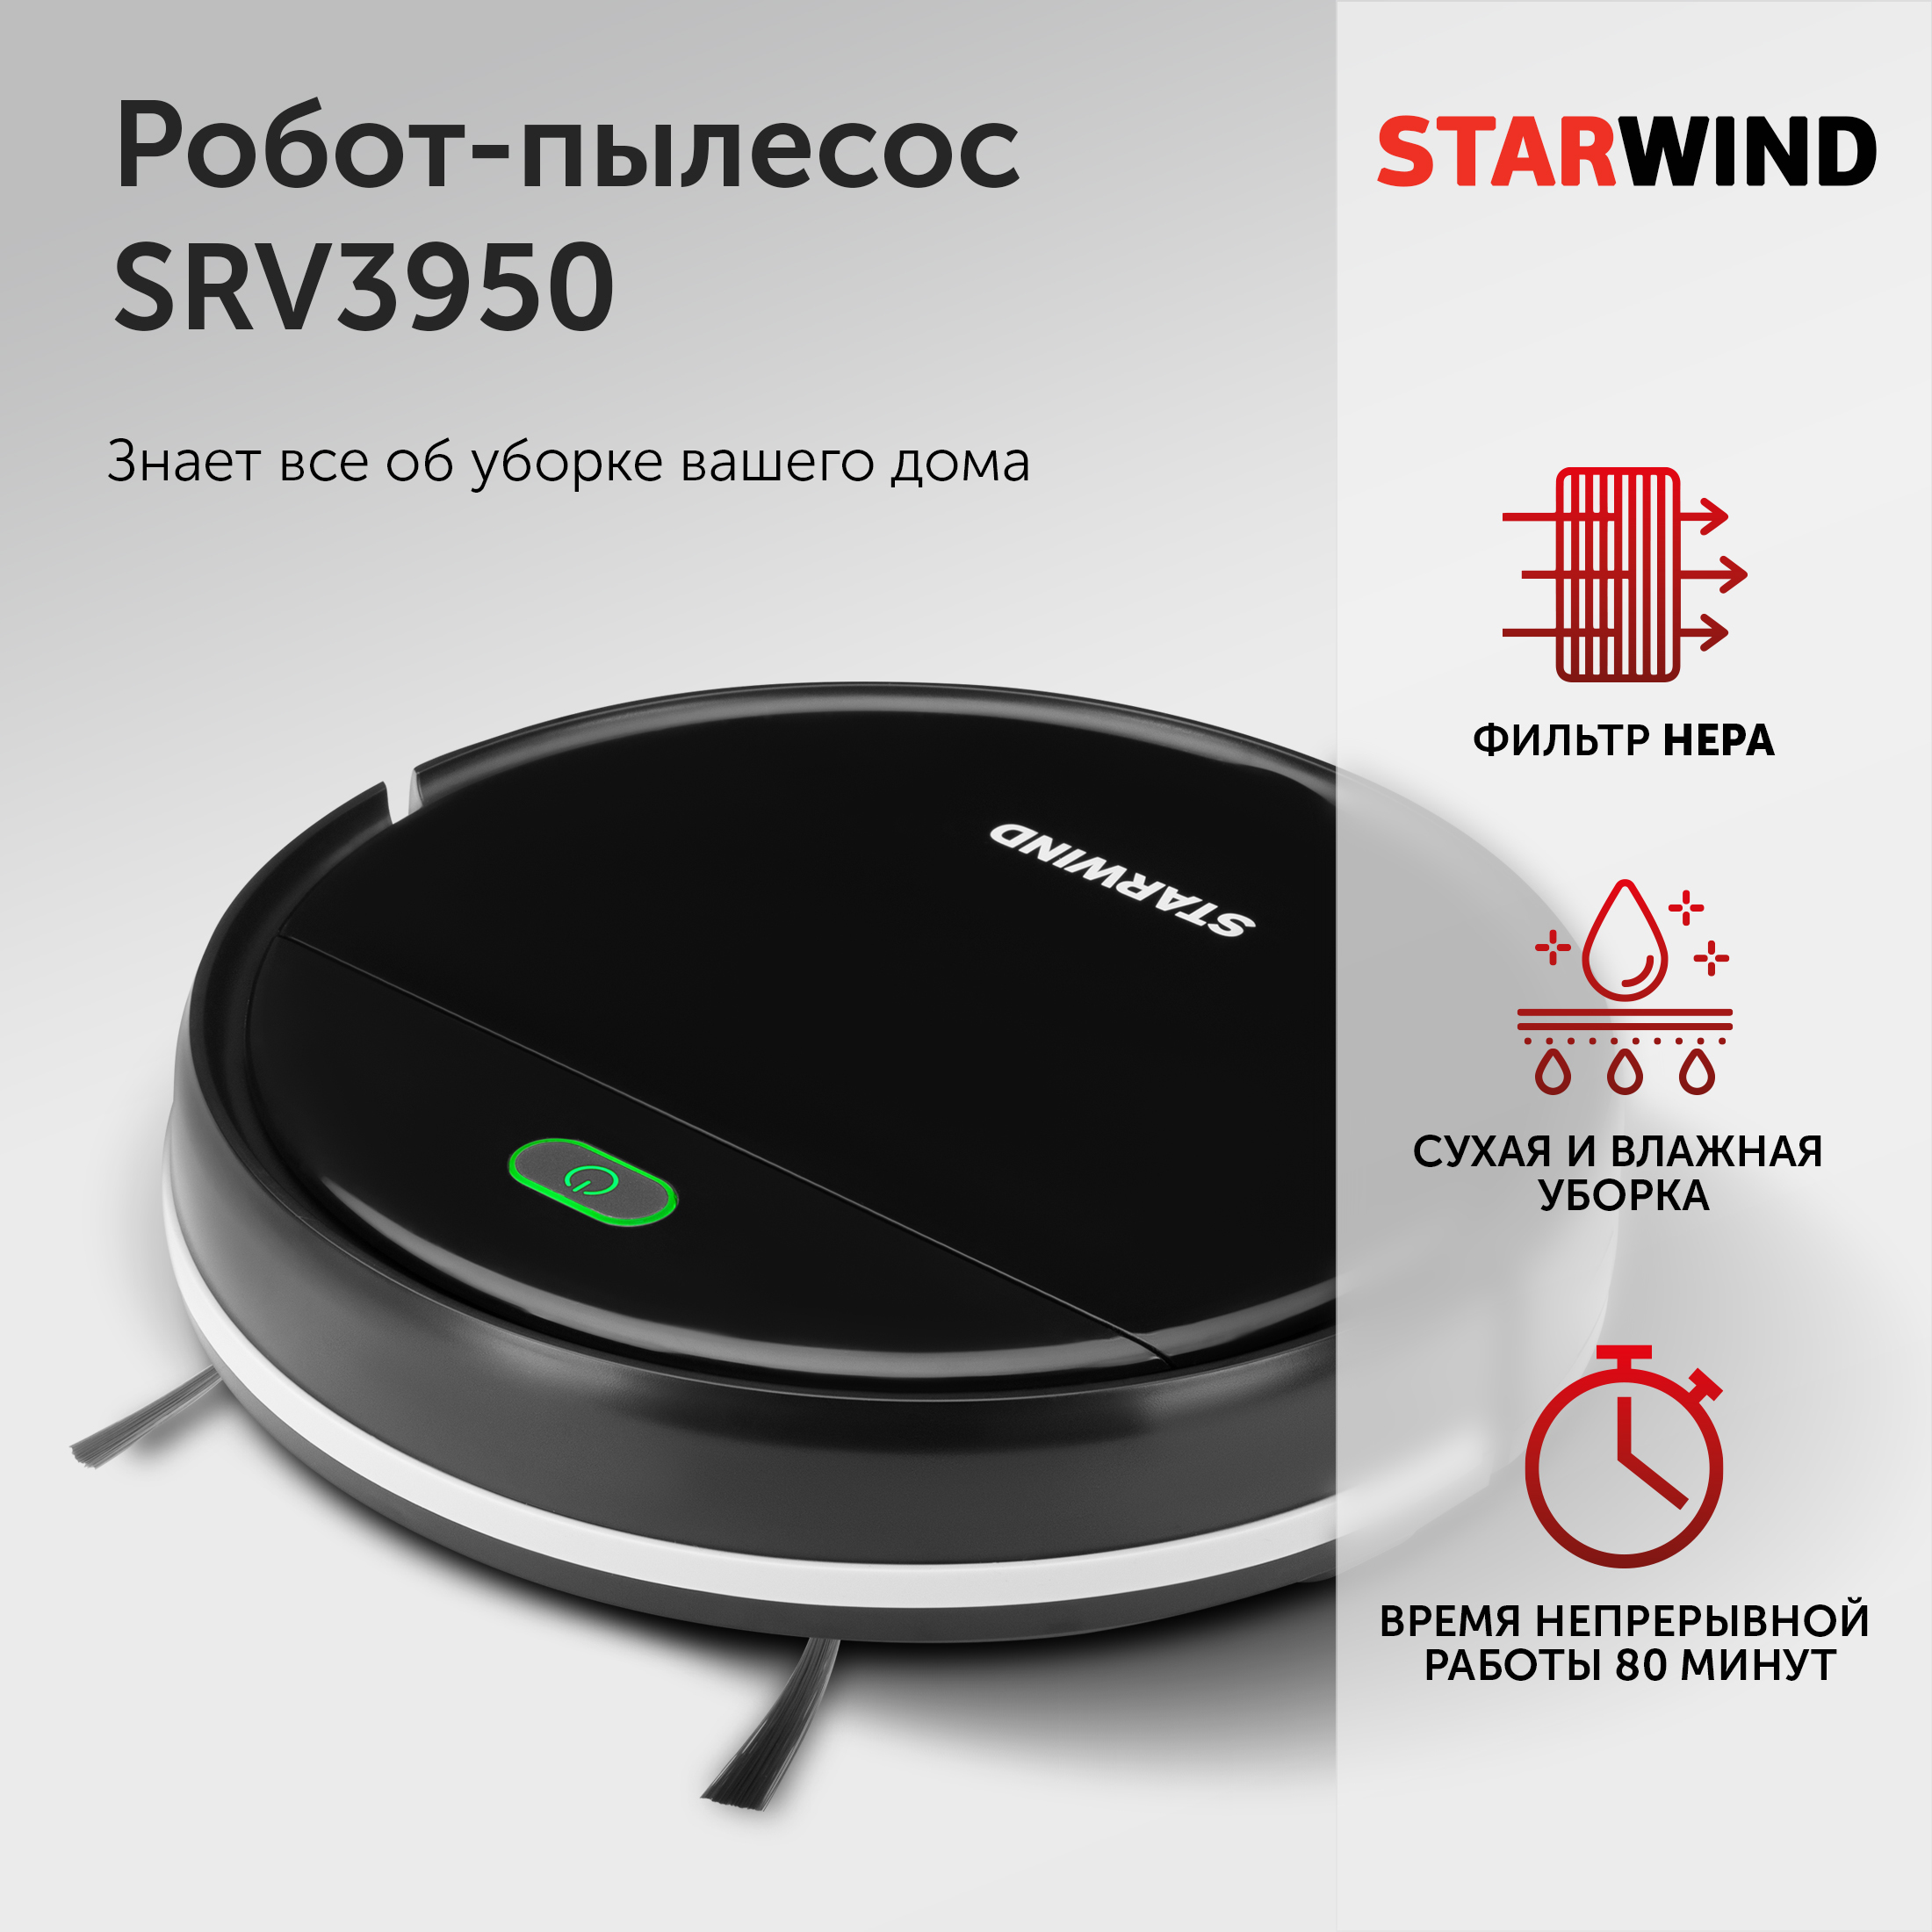 Starwind Srv7550